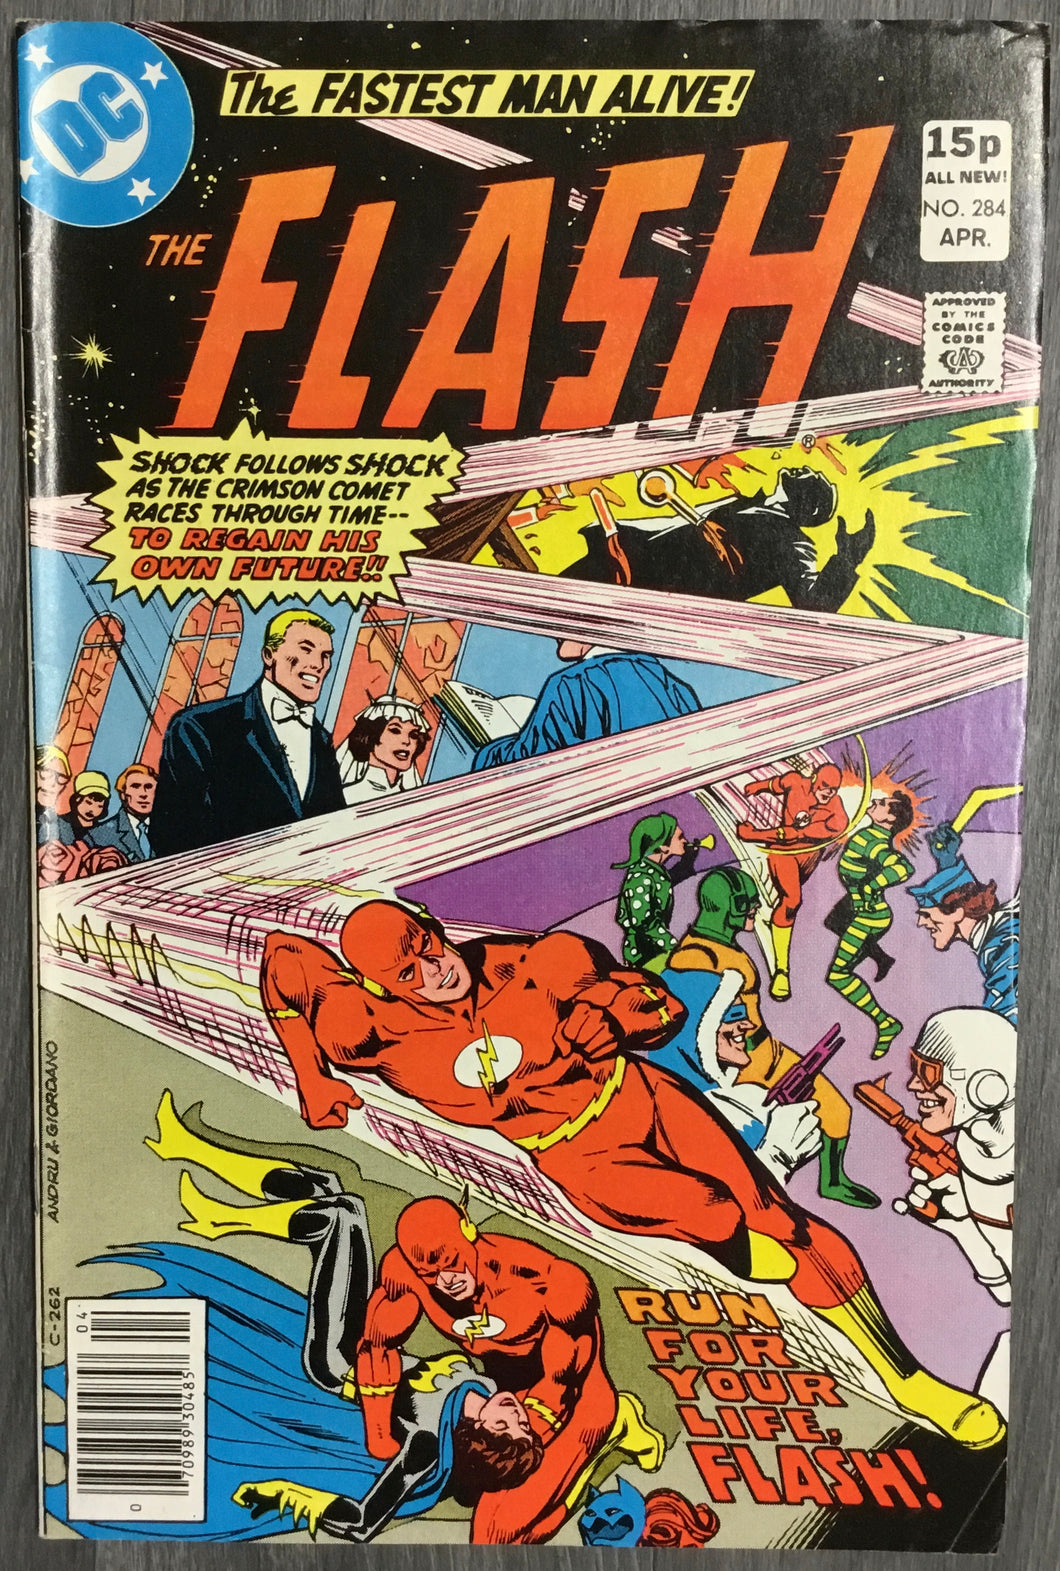 The Flash No. #284 1980 DC Comics